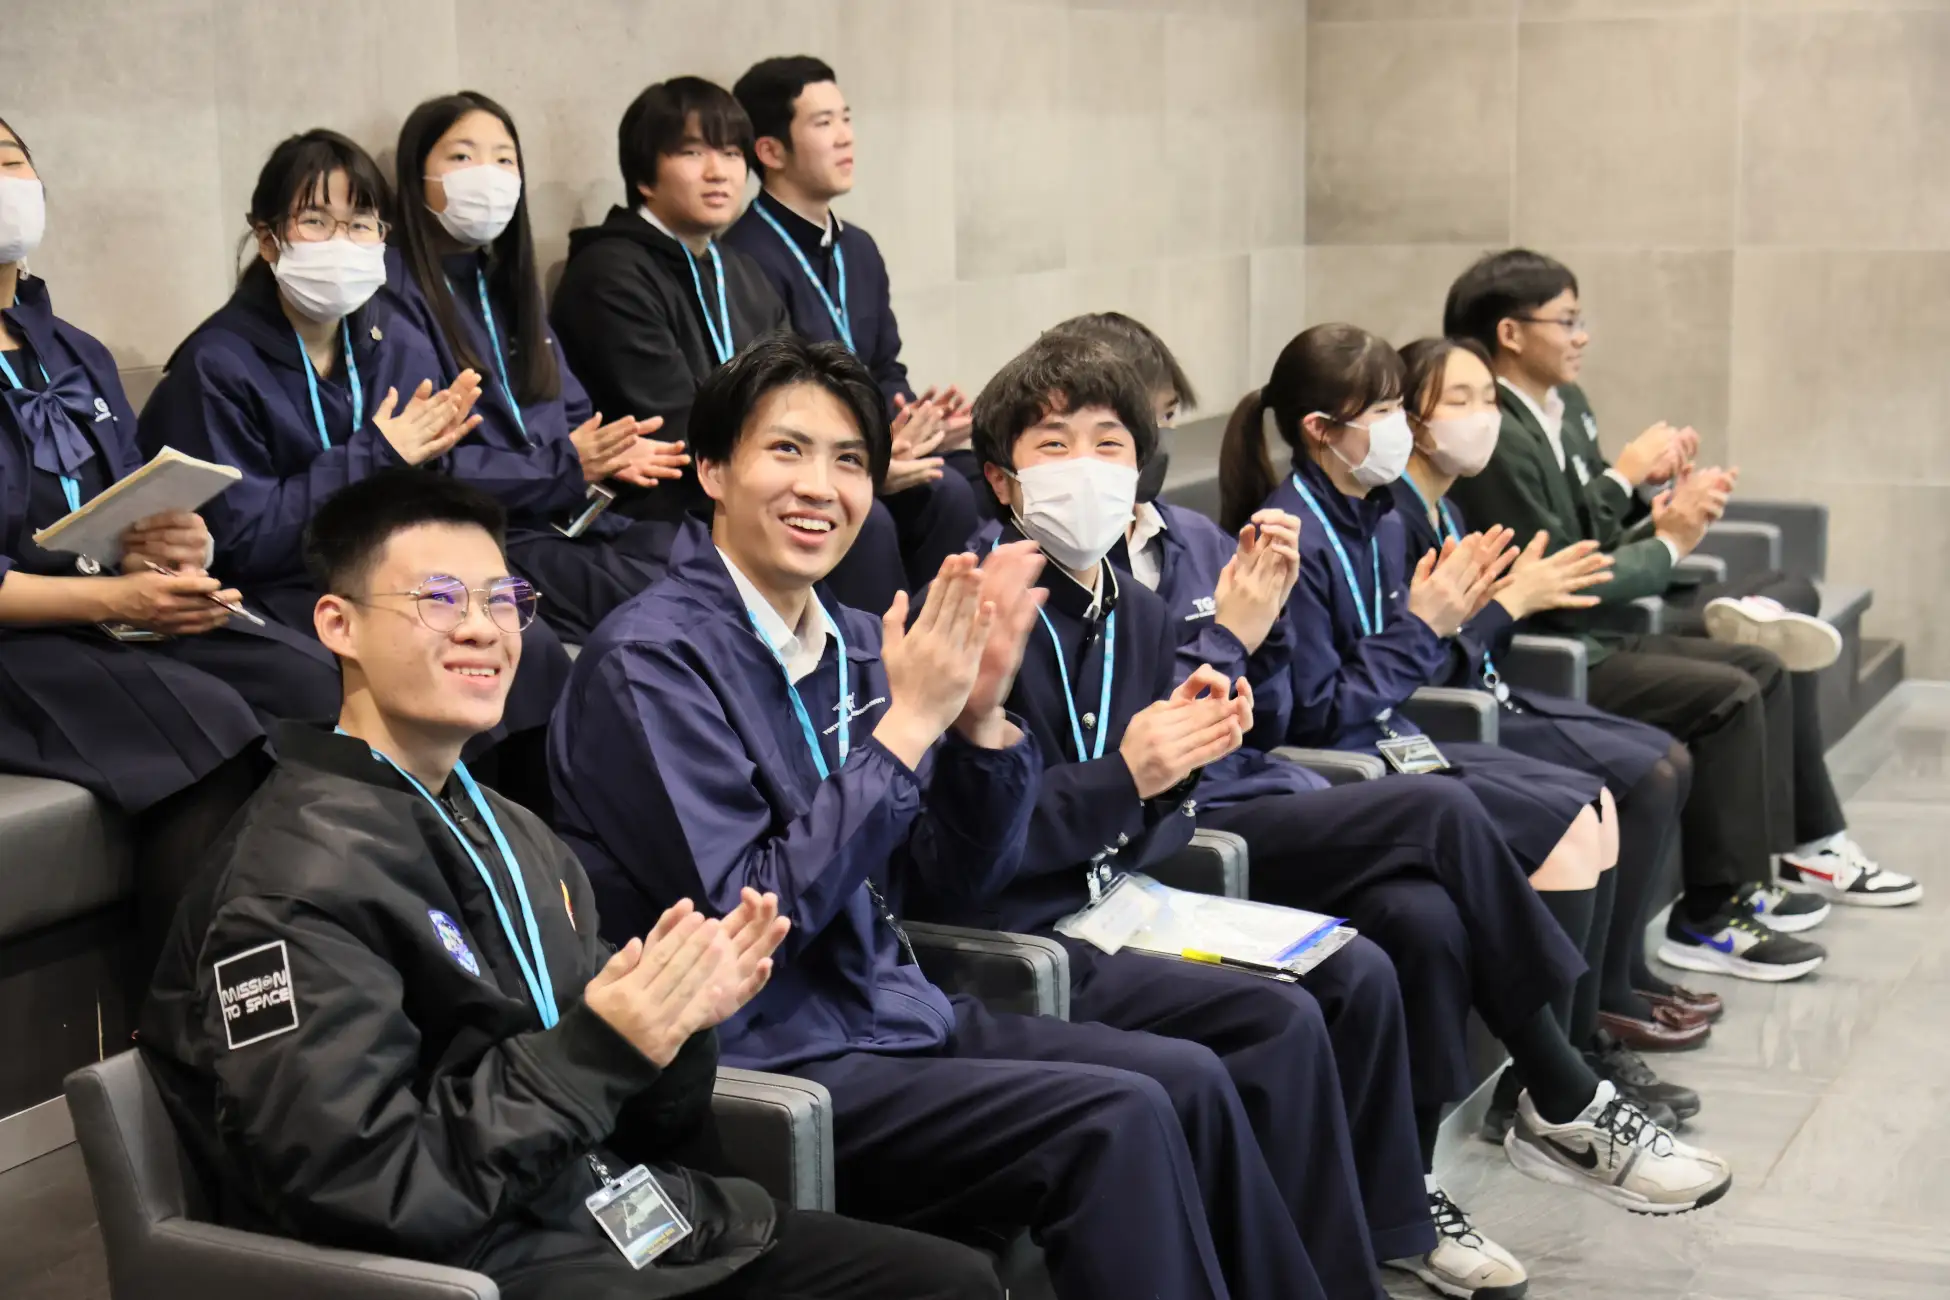 สุดทึ่ง ! นักบินอวกาศญี่ปุ่น ทดลอง 3 ไอเดียของเยาวชนไทยบนสถานีอวกาศนานาชาติ